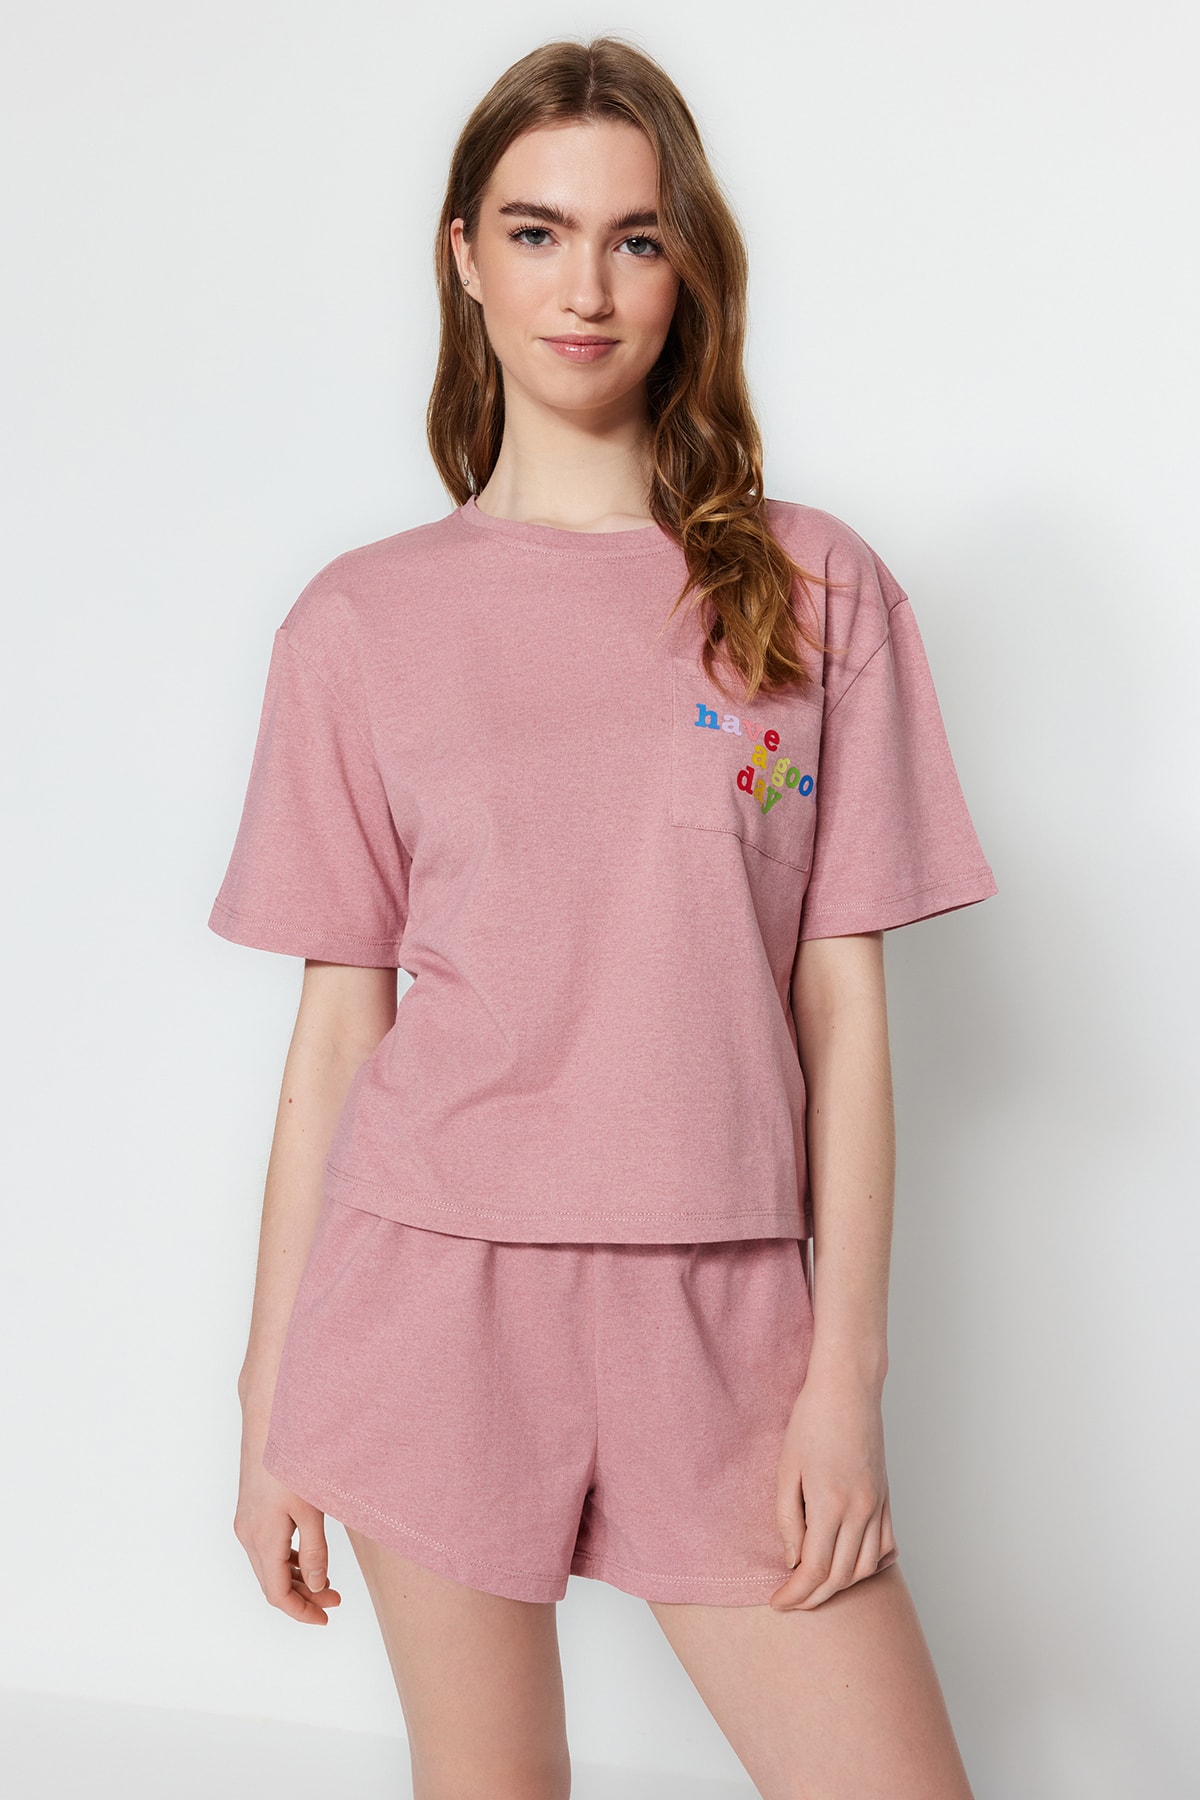 Trendyol Pink Cotton Slogan Printed T-shirt-Shorts Knitted Pajama Set